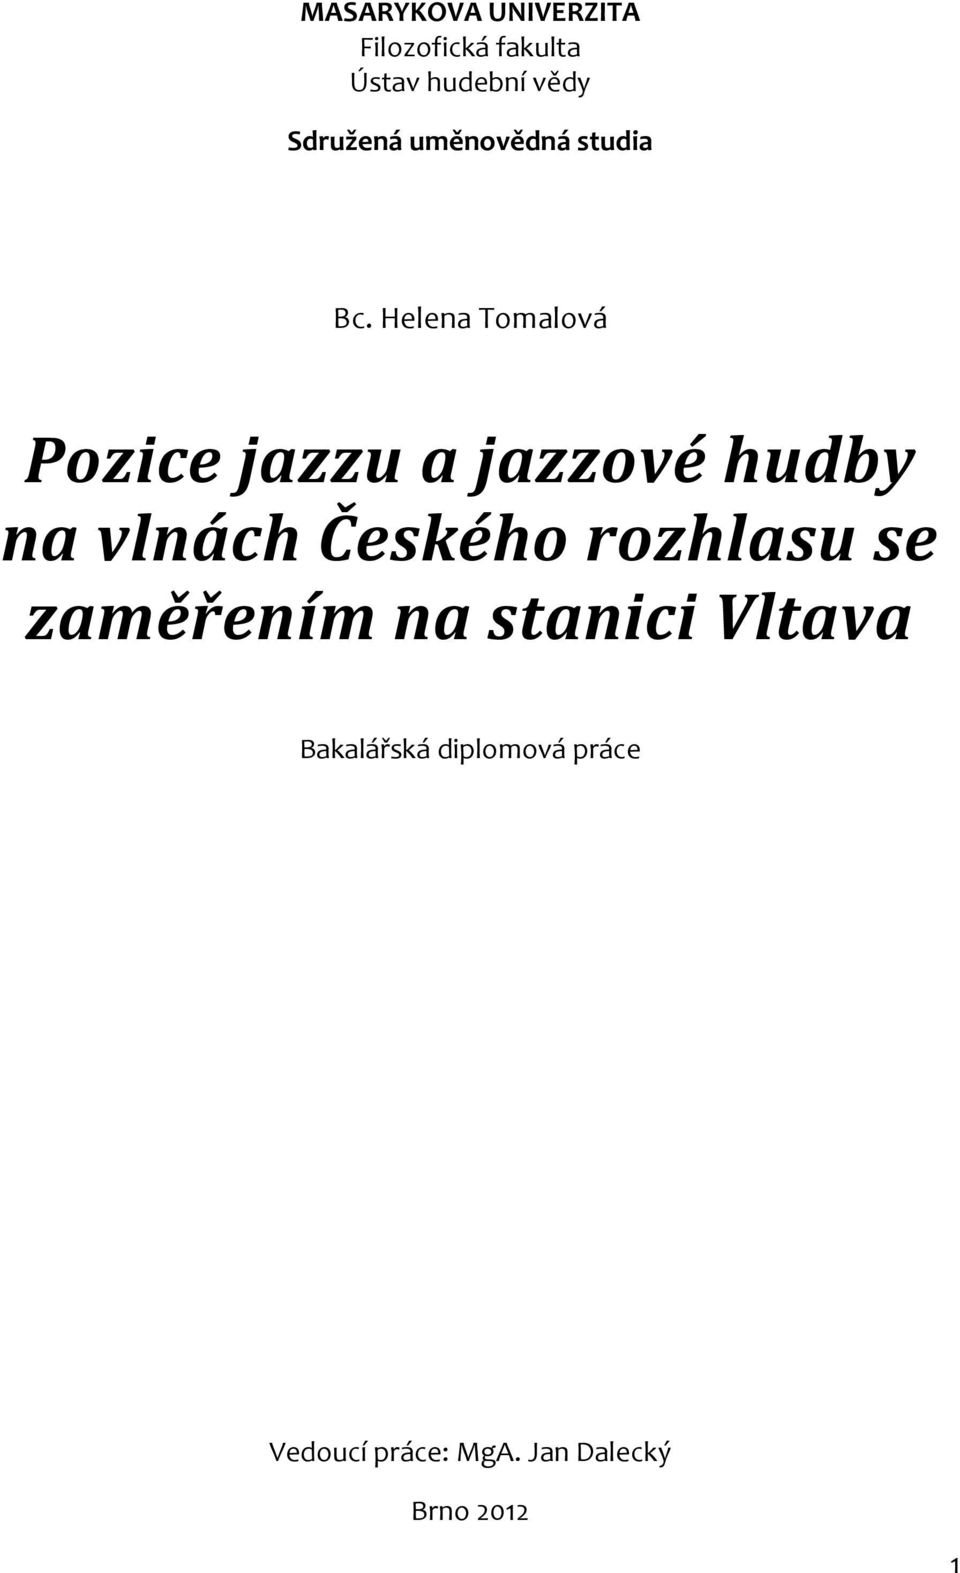 Helena Tomalová Pozice jazzu a jazzové hudby na vlnách Českého